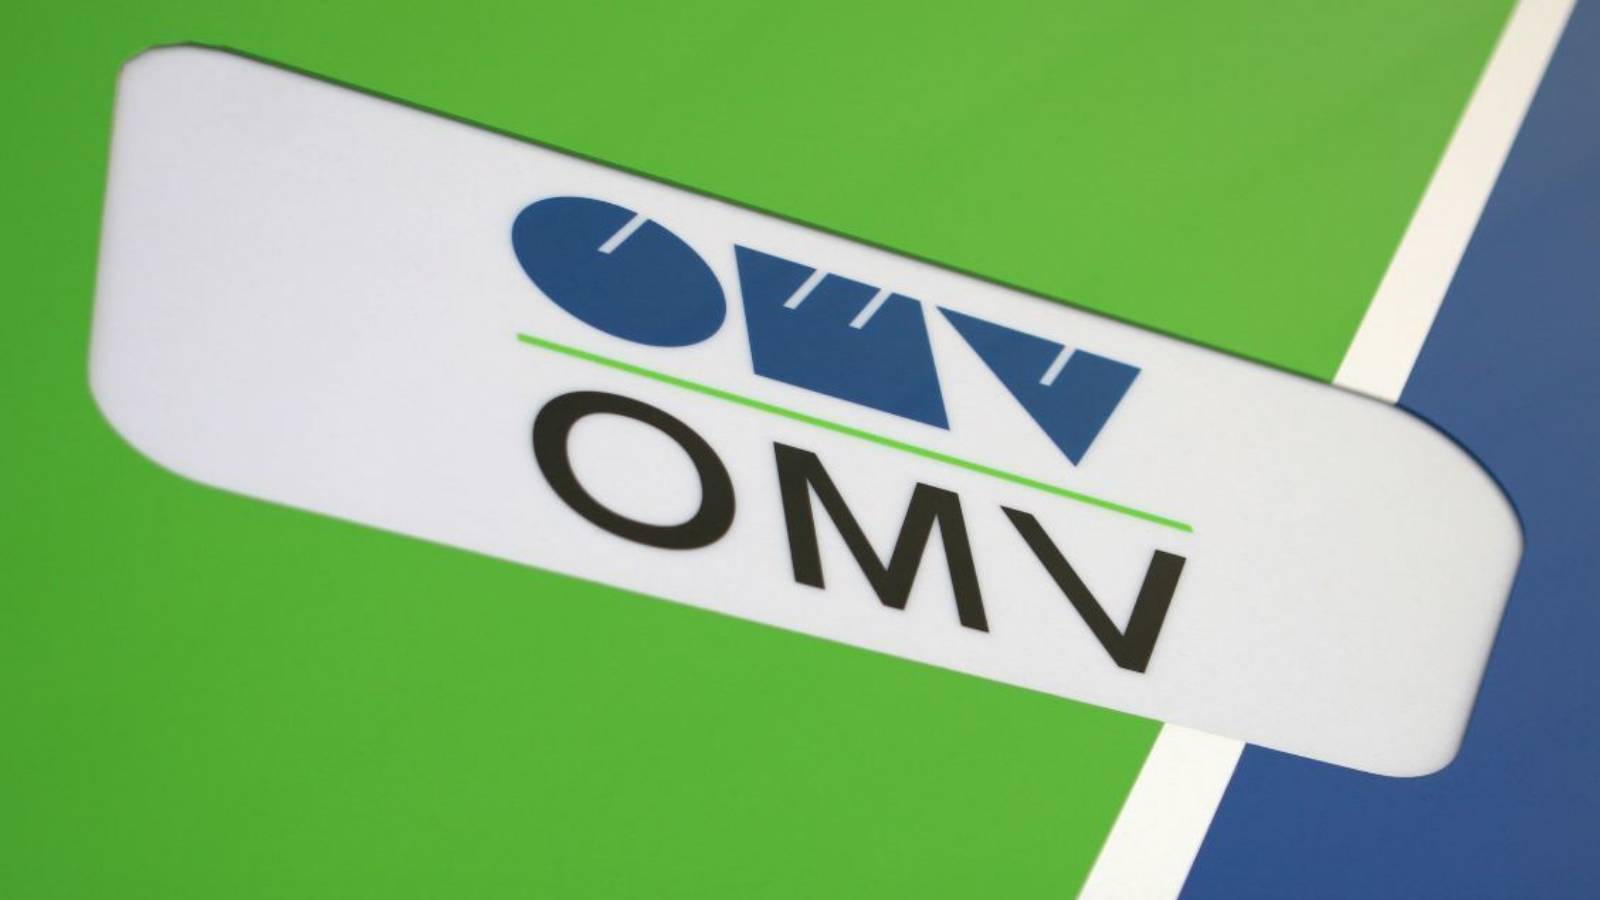 Décision OMV CHANGEMENTS IMPORTANTS Stations-service Roumanie !